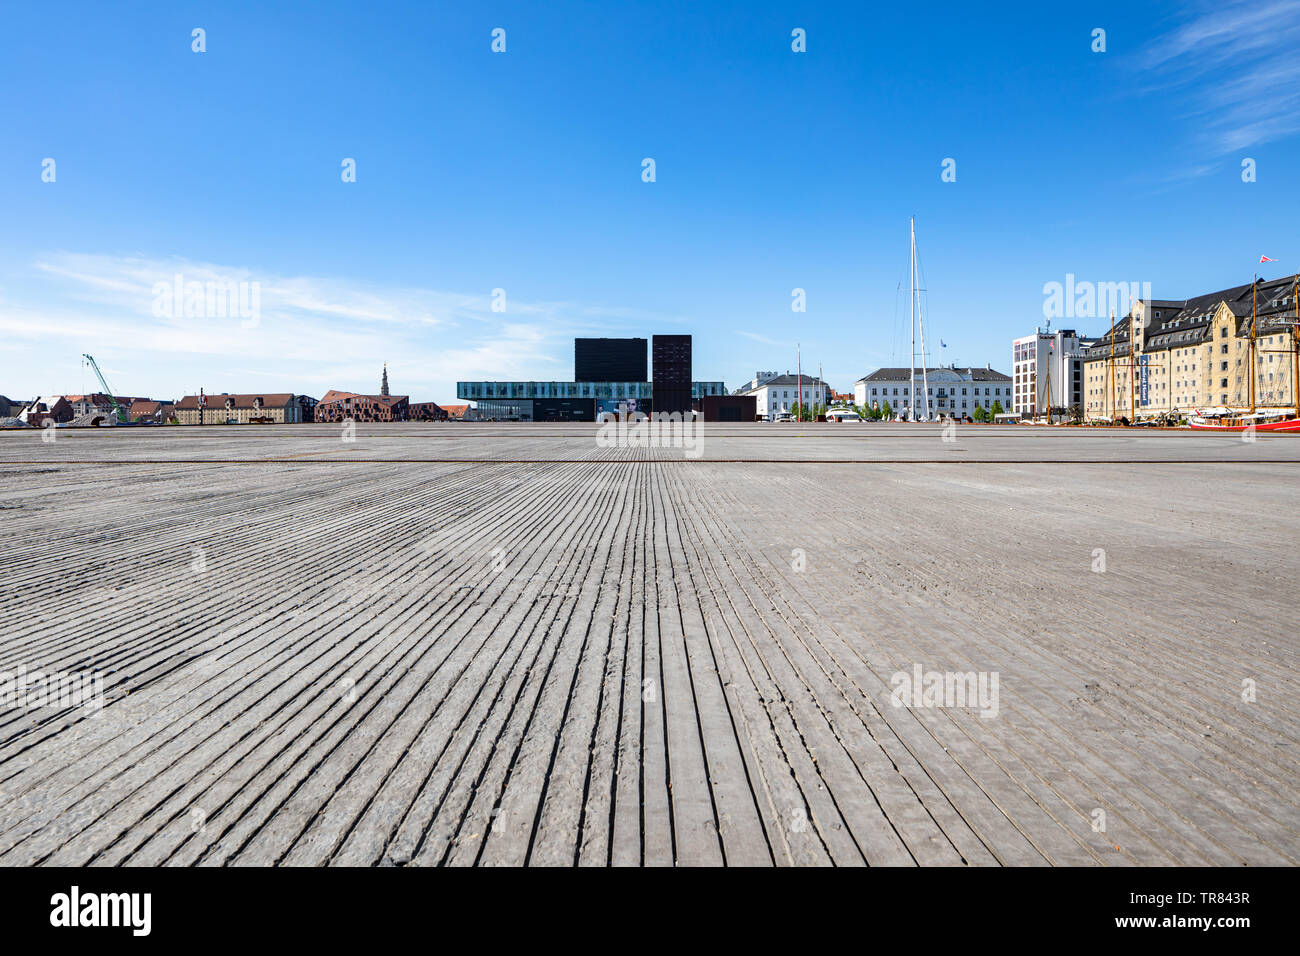 Die Kvaesthus Kvaesthusmolen (Pier), entworfen von Lundgaard & Tranberg, Abgeschlossen 2016, Kopenhagen, Dänemark Stockfoto